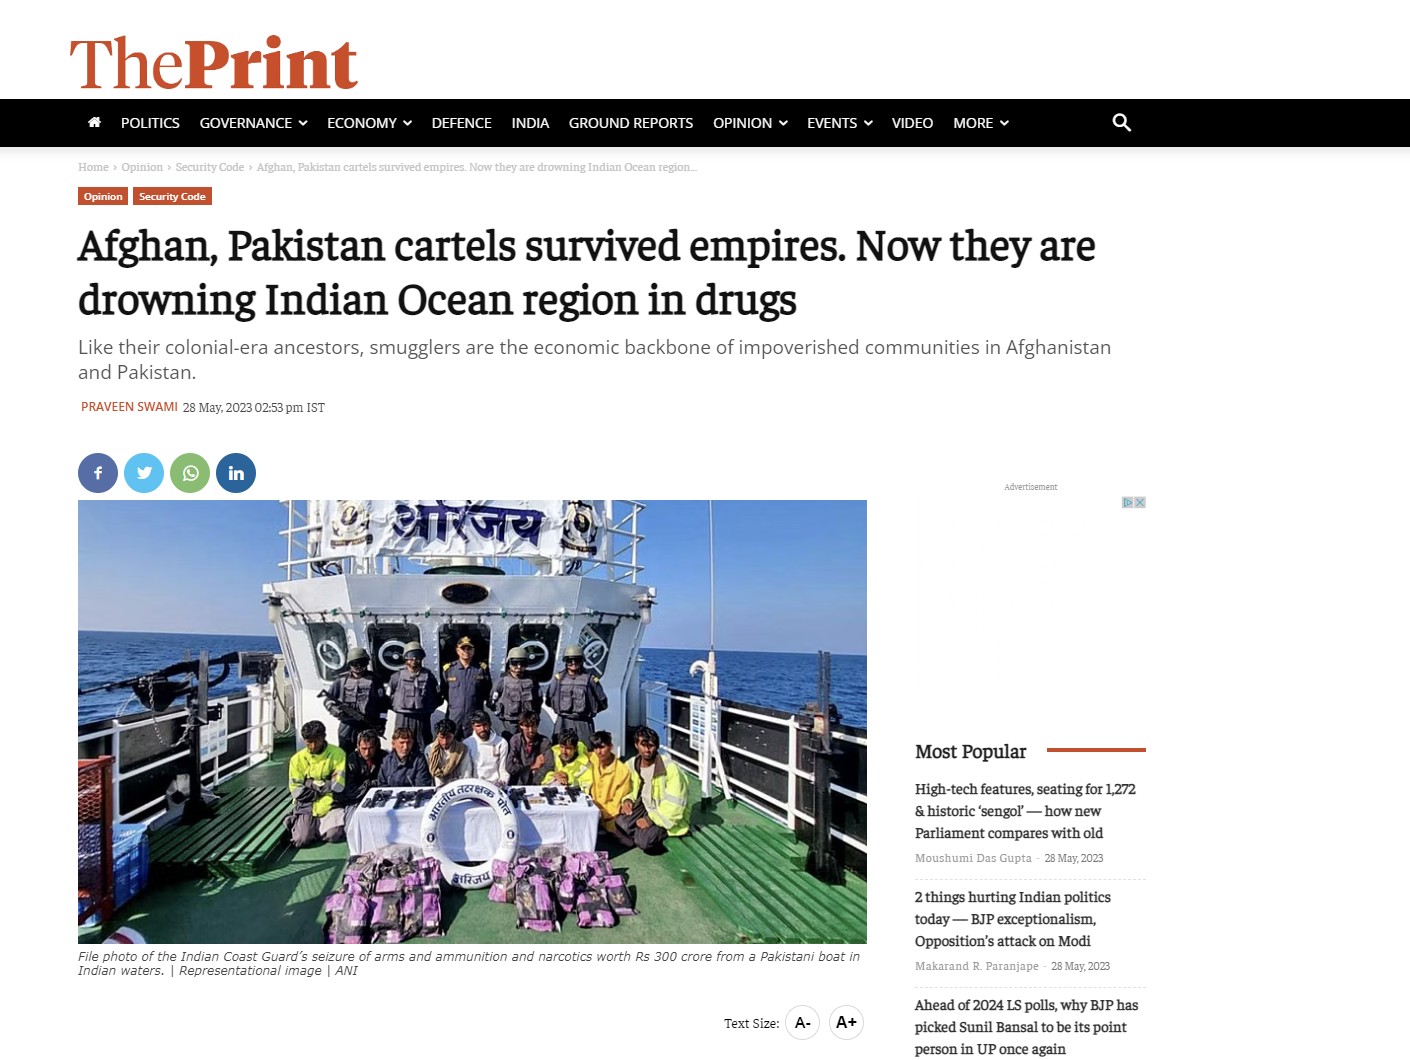 Τα καρτέλ του Αφγανιστάν και του Πακιστάν πνίγουν την περιοχή του Ινδικού Ωκεανού στα ναρκωτικά! Η ιστορία και ο ρόλος της ISI